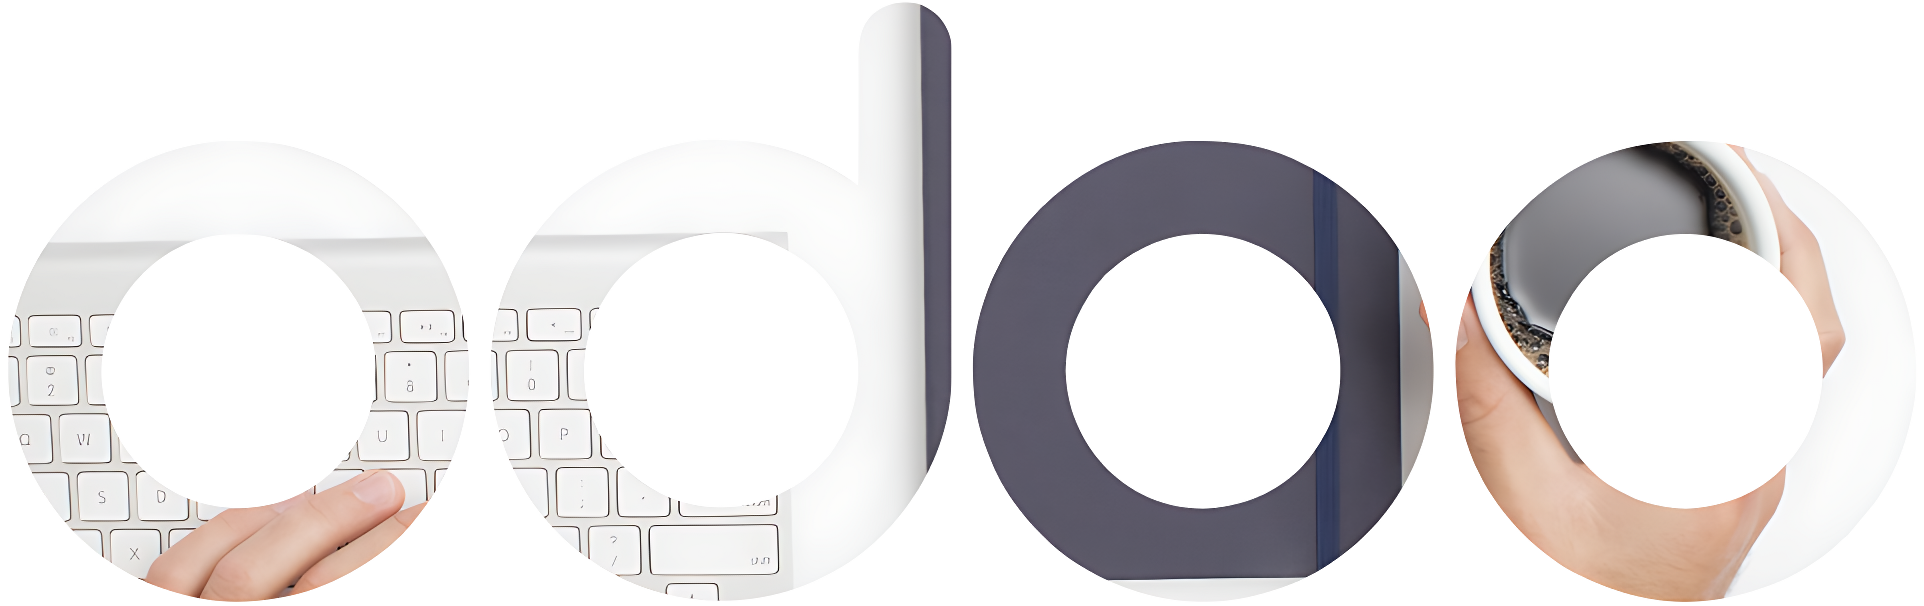 Odoo Logo